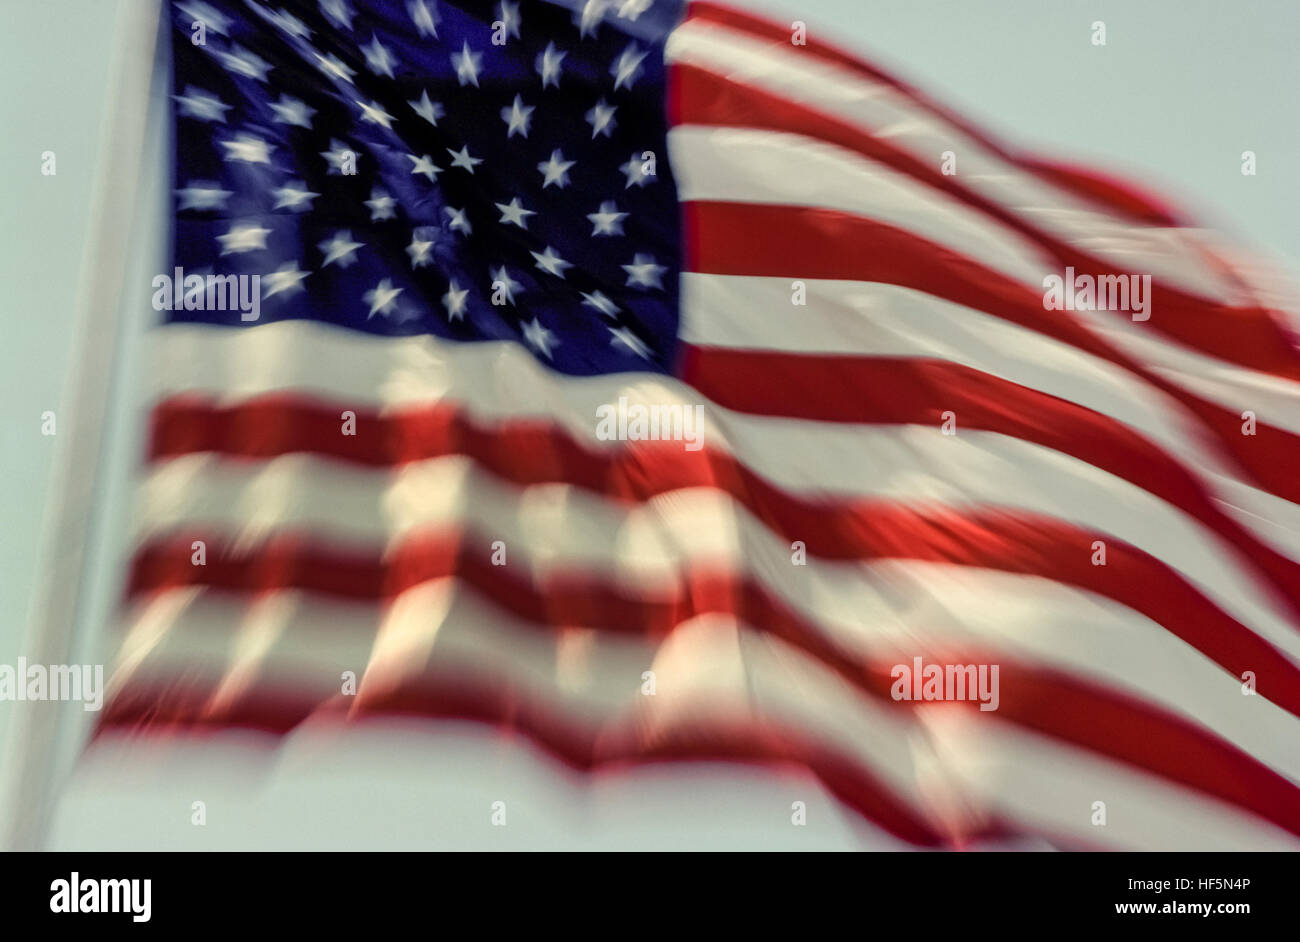 Die nationale Flagge der Vereinigten Staaten von Amerika bekannt verschieden als die amerikanische Flagge, den Sternen und Streifen, Old Glory und Star-Spangled Banner. Die 50 fünfzackigen kleinen weißen Sternen auf blauem rechteckige Feld repräsentieren die 50 Staaten der USA, während die 13 abwechselnd rote und weiße Querstreifen repräsentieren die 13 britischen Kolonien in Amerika, die Unabhängigkeit von Großbritannien erklärt. Im Jahre 1960 verabschiedete ist dies die 27. Version der US-Flagge, die zuerst im Jahre 1777 entworfen wurde. Es wird hier gezeigt, im Wind wehende. Stockfoto